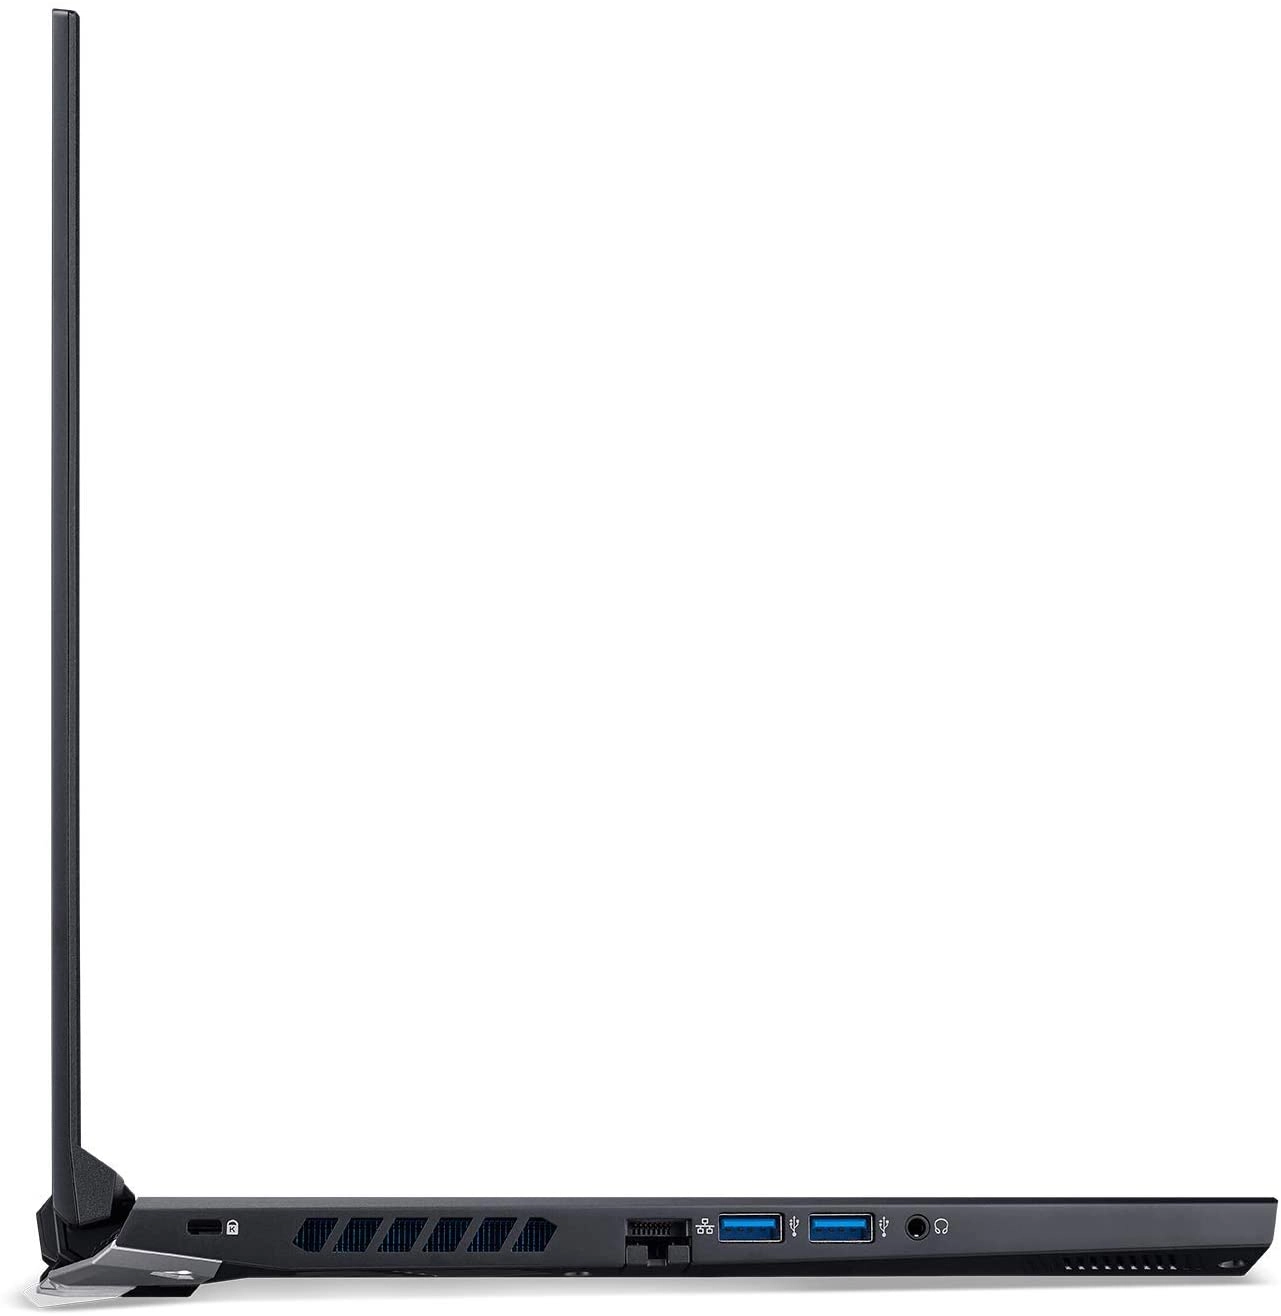 Acer PH315-53 laptop image